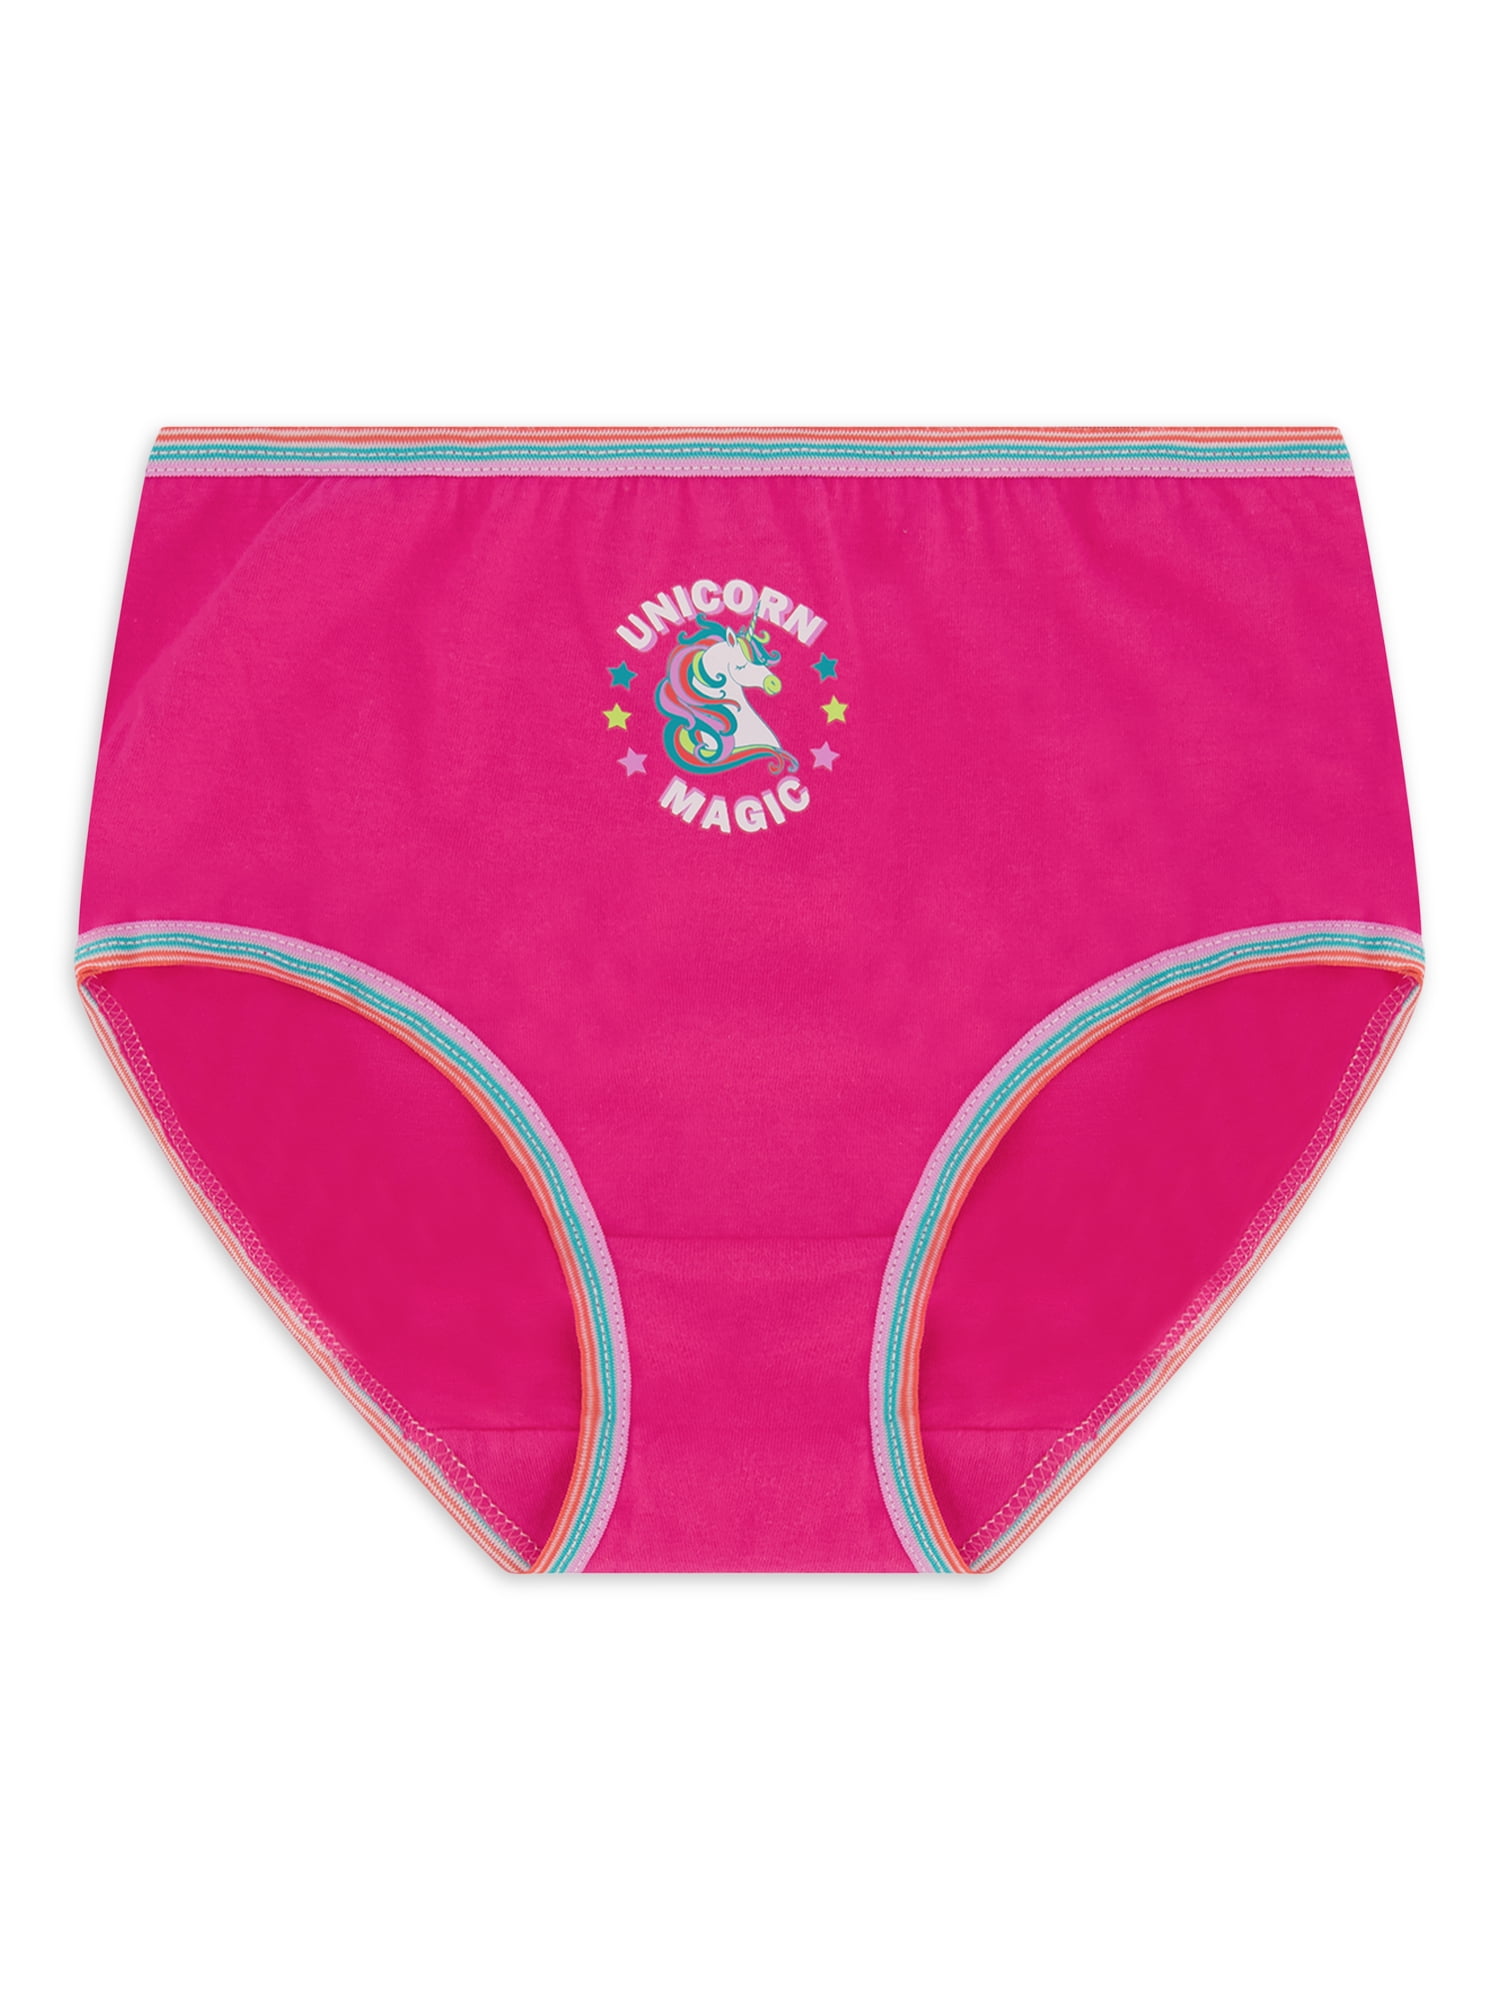 Wonder Nation Girls Size 12 Brief Underwear 5 Pack multicolor, pink NWT